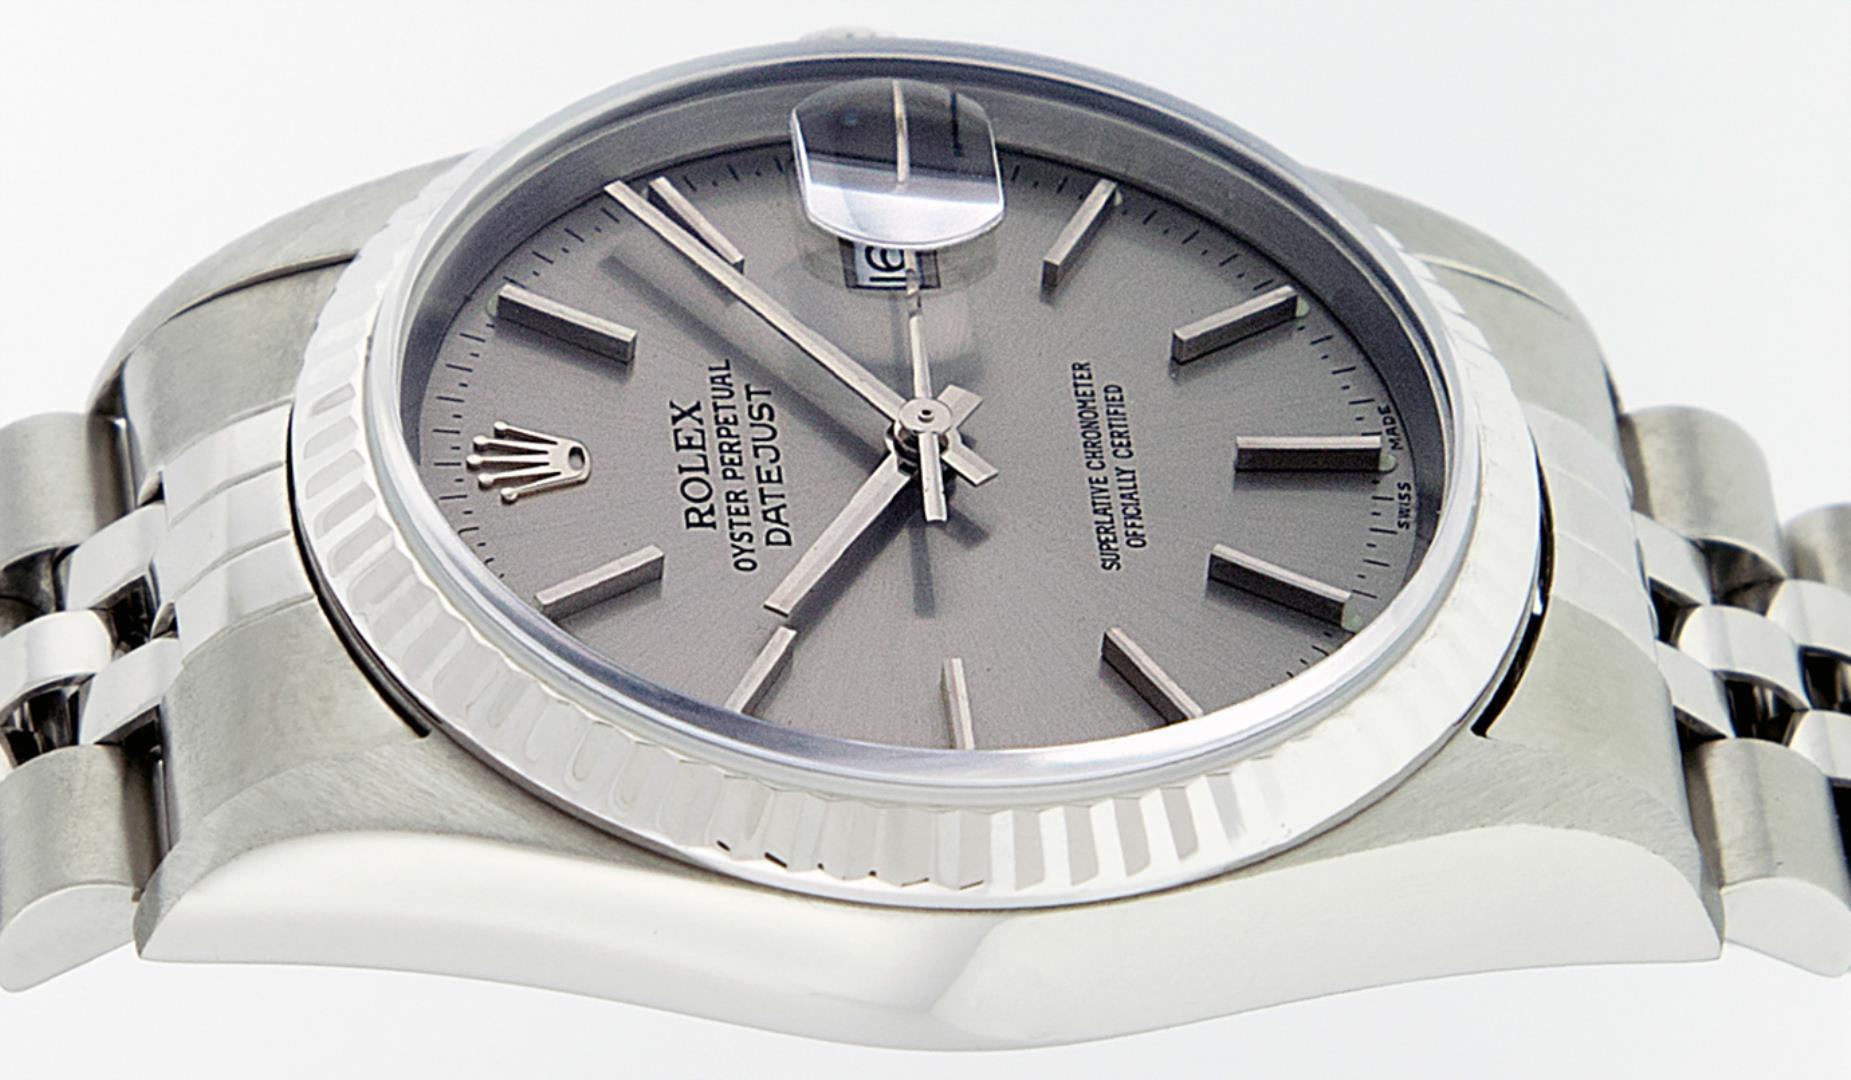 Rolex Men's Stainless Steel Gray Index Datejust Wristwatch